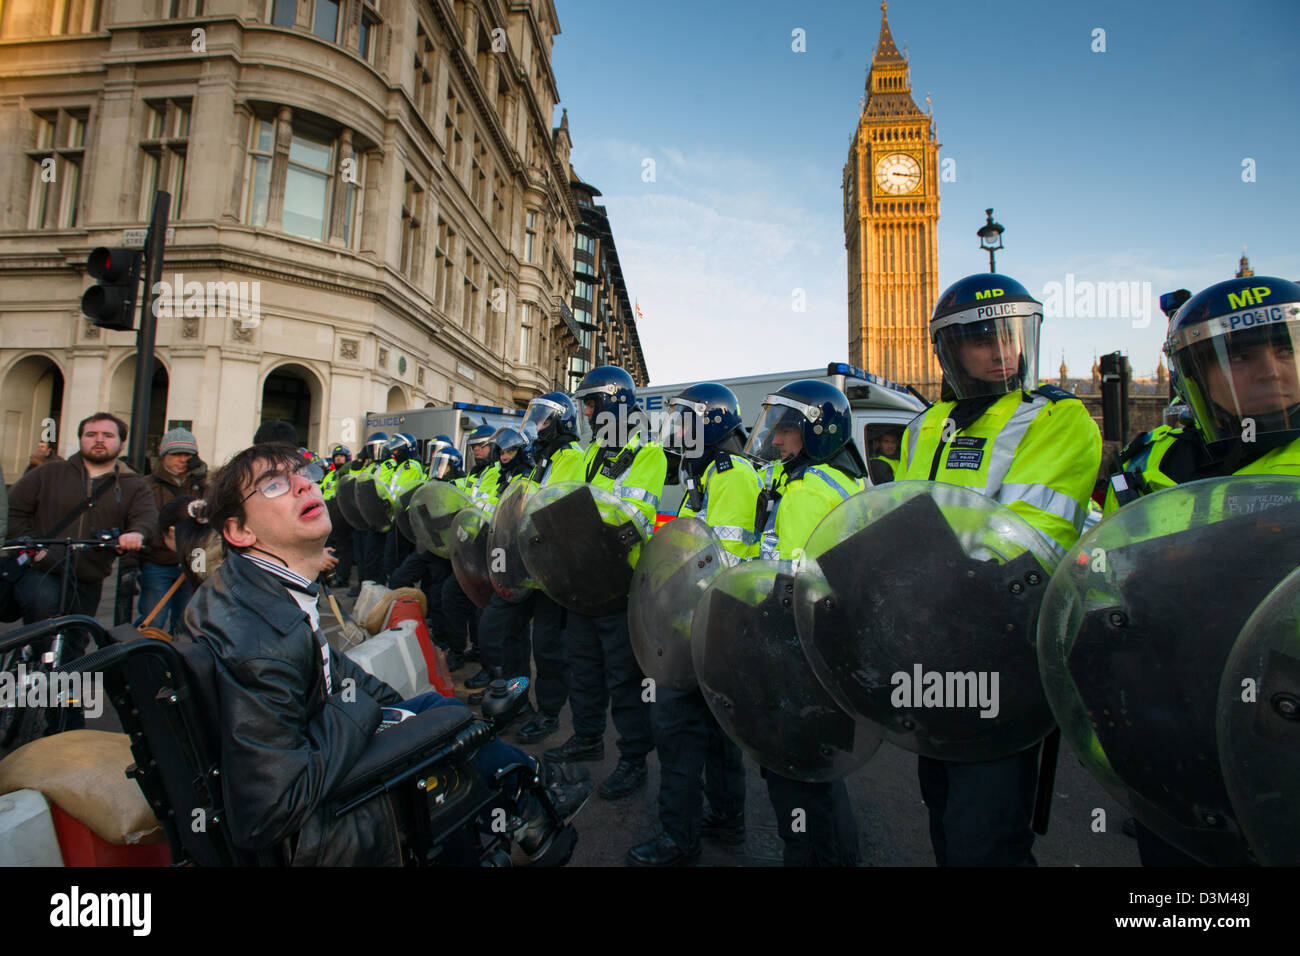 Behinderte Menschen in einem Rollstuhl, die Konfrontation mit einer Polizeiabsperrung in voller Kampfausrüstung vor der Houses of Parliament, Tag X3 Studentendemonstration, London, England Stockfoto